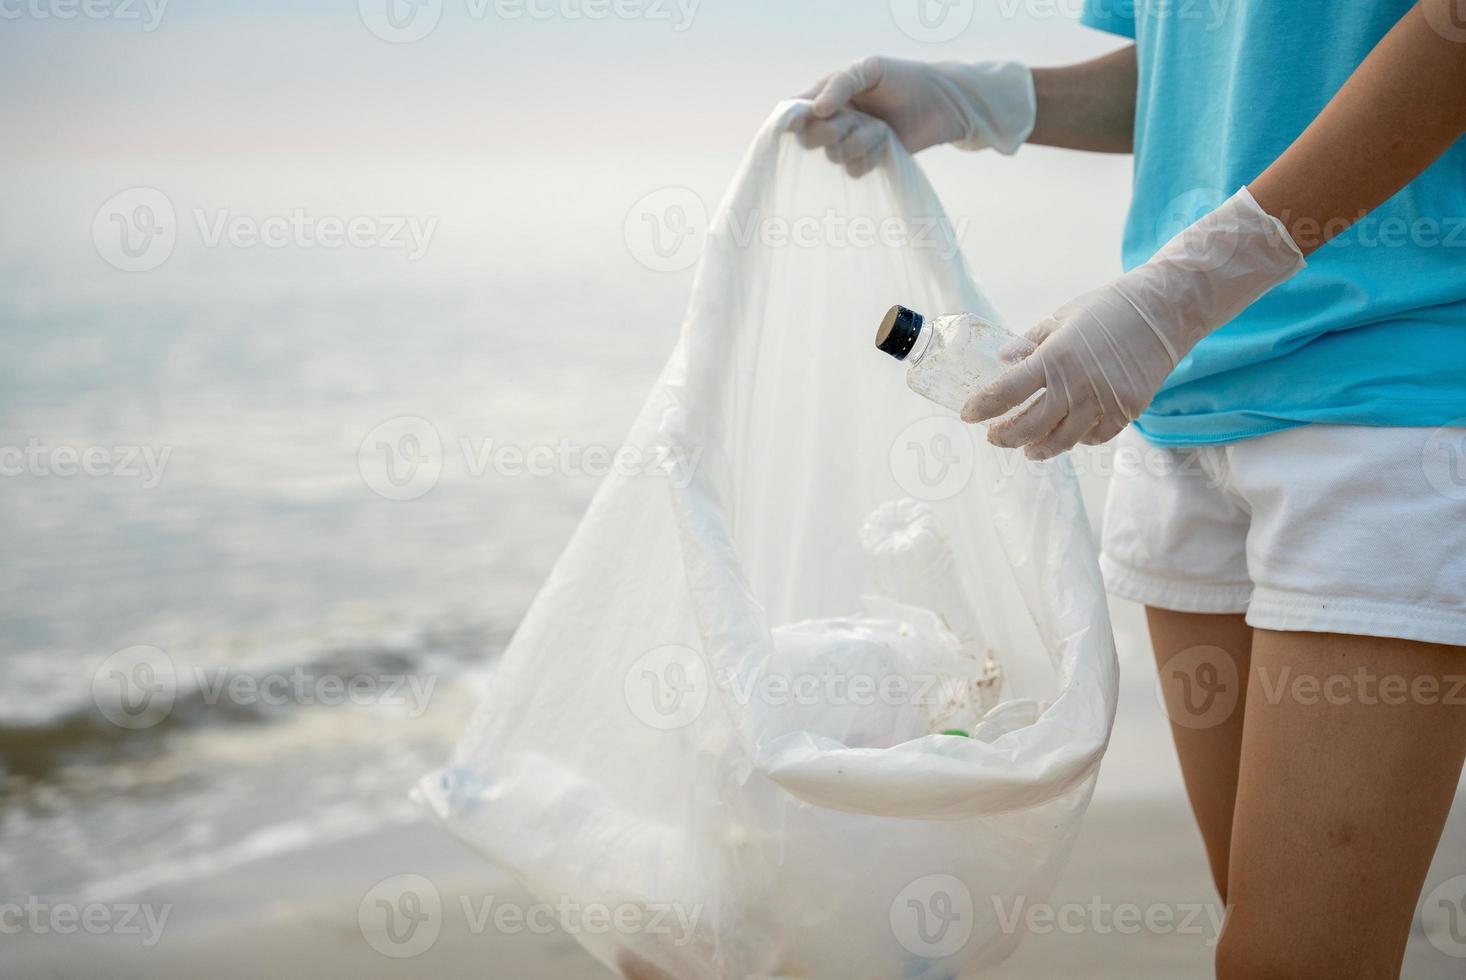 bénévole choisir en haut poubelle des ordures à le plage et Plastique bouteilles sont difficile décomposer prévenir nuire aquatique vie. Terre, environnement, écologisation planète, réduire global échauffement, enregistrer monde photo